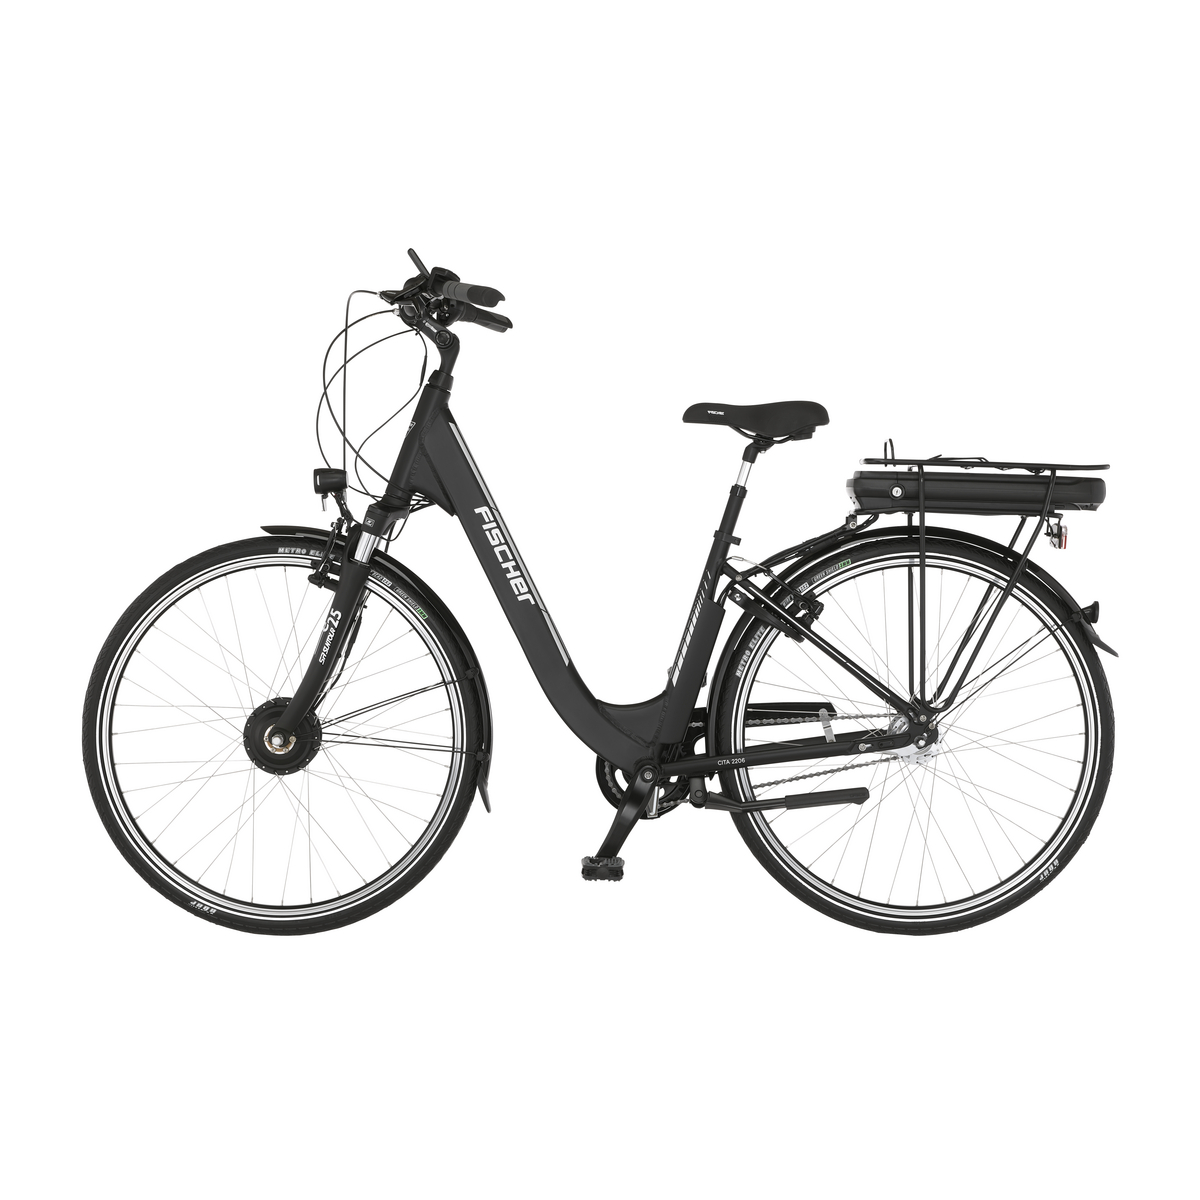 FISCHER CITA ECU | matt, City Generalüberholt RH E-Bikes - Outlet 44 - E-Bikes 28 cm, | Outlet Sale% E-Bike Zoll, Outlet | 522 Wh City schwarz | 2206